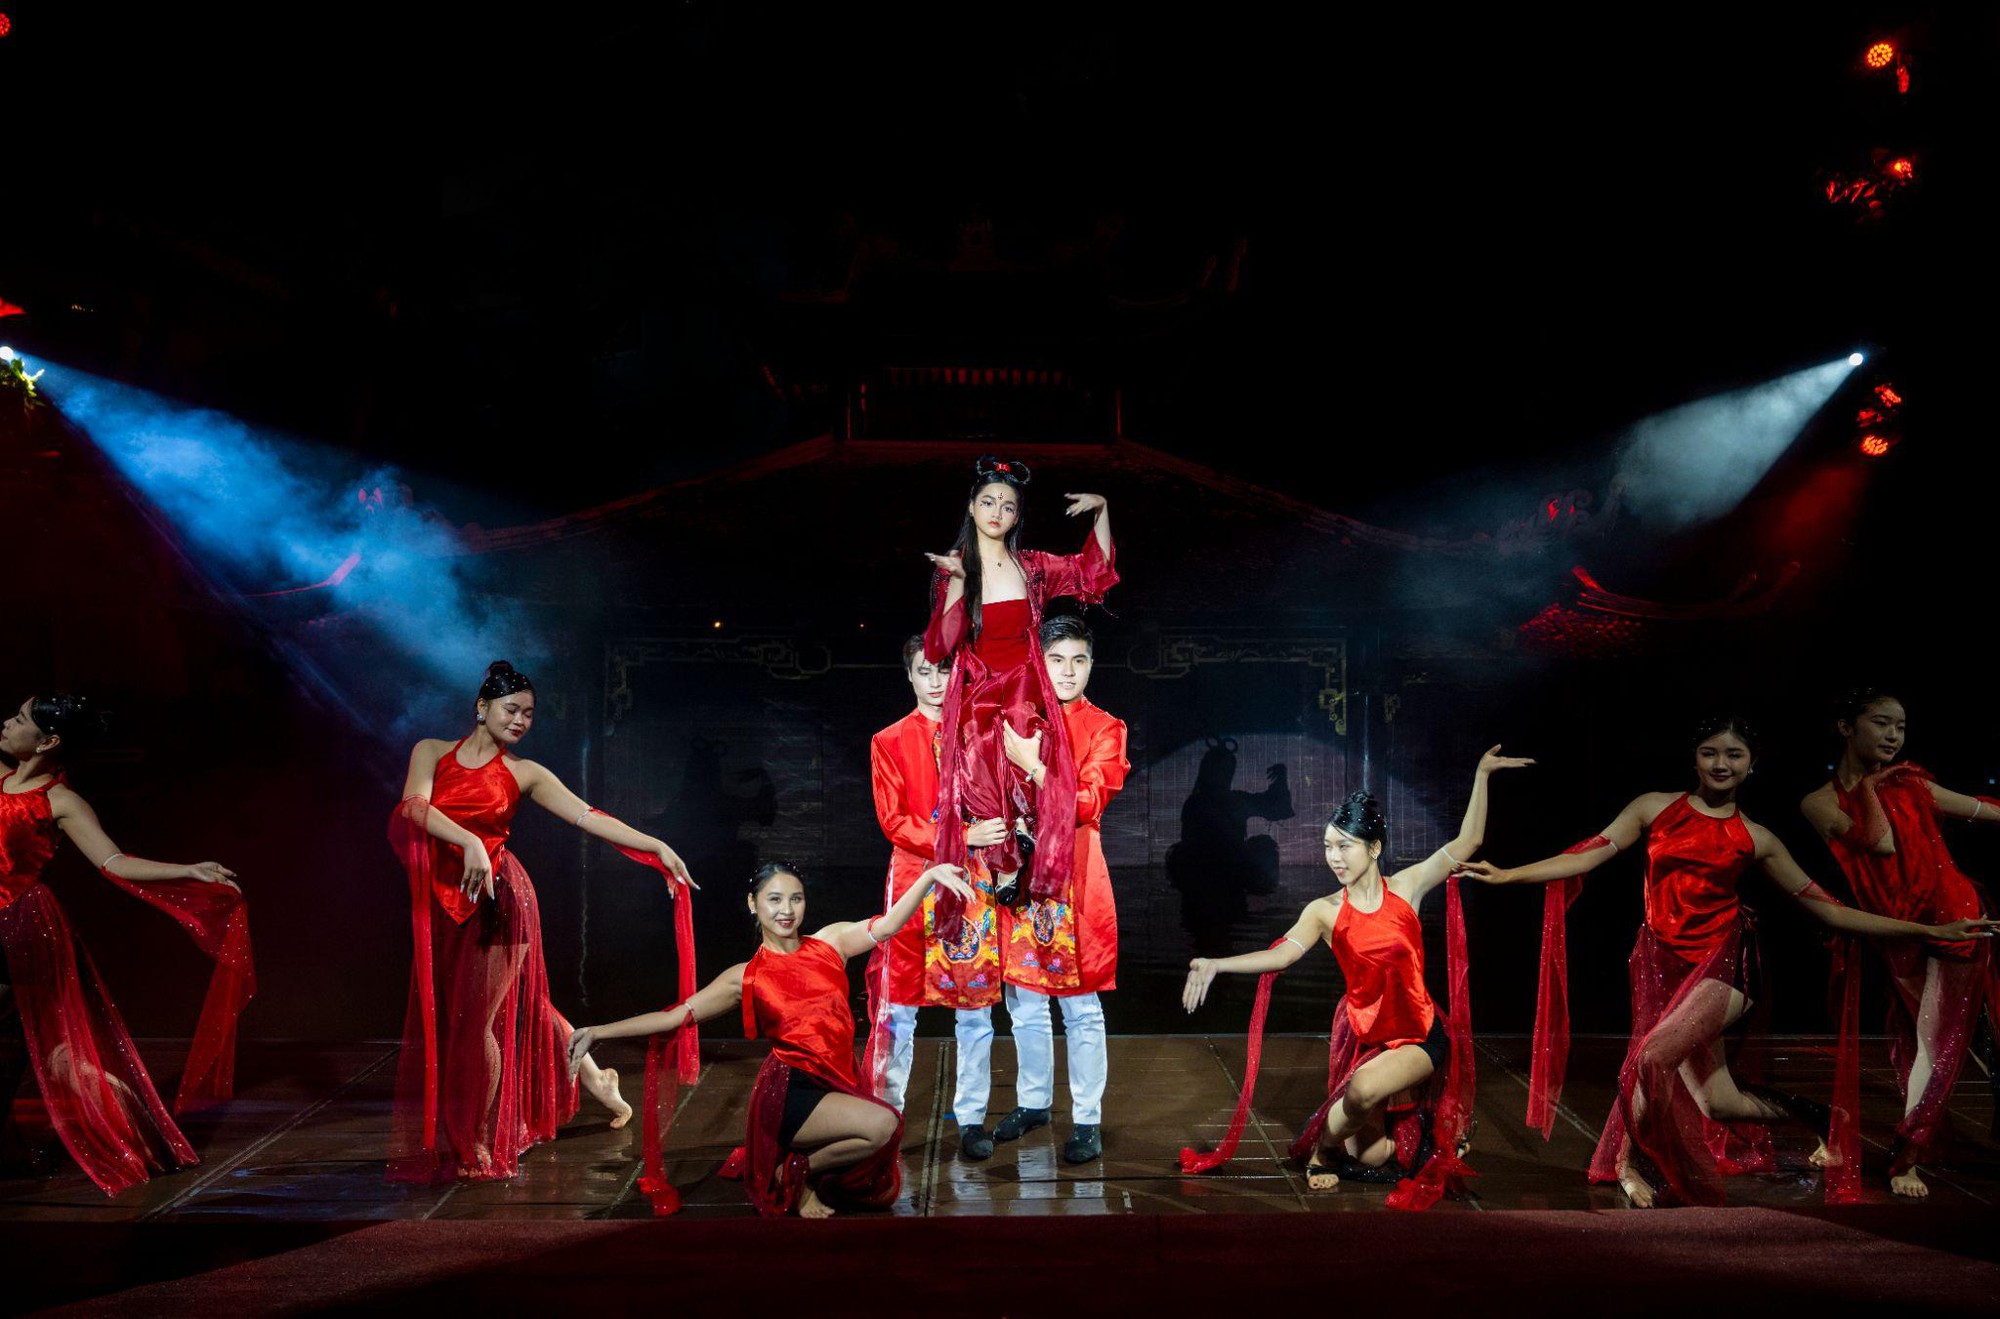 Mẫu nhí Jenny Bảo Vy sáng bừng trên sân khấu tại show thời trang của NTK Phạm Trần Thu Hằng - Ảnh 1.